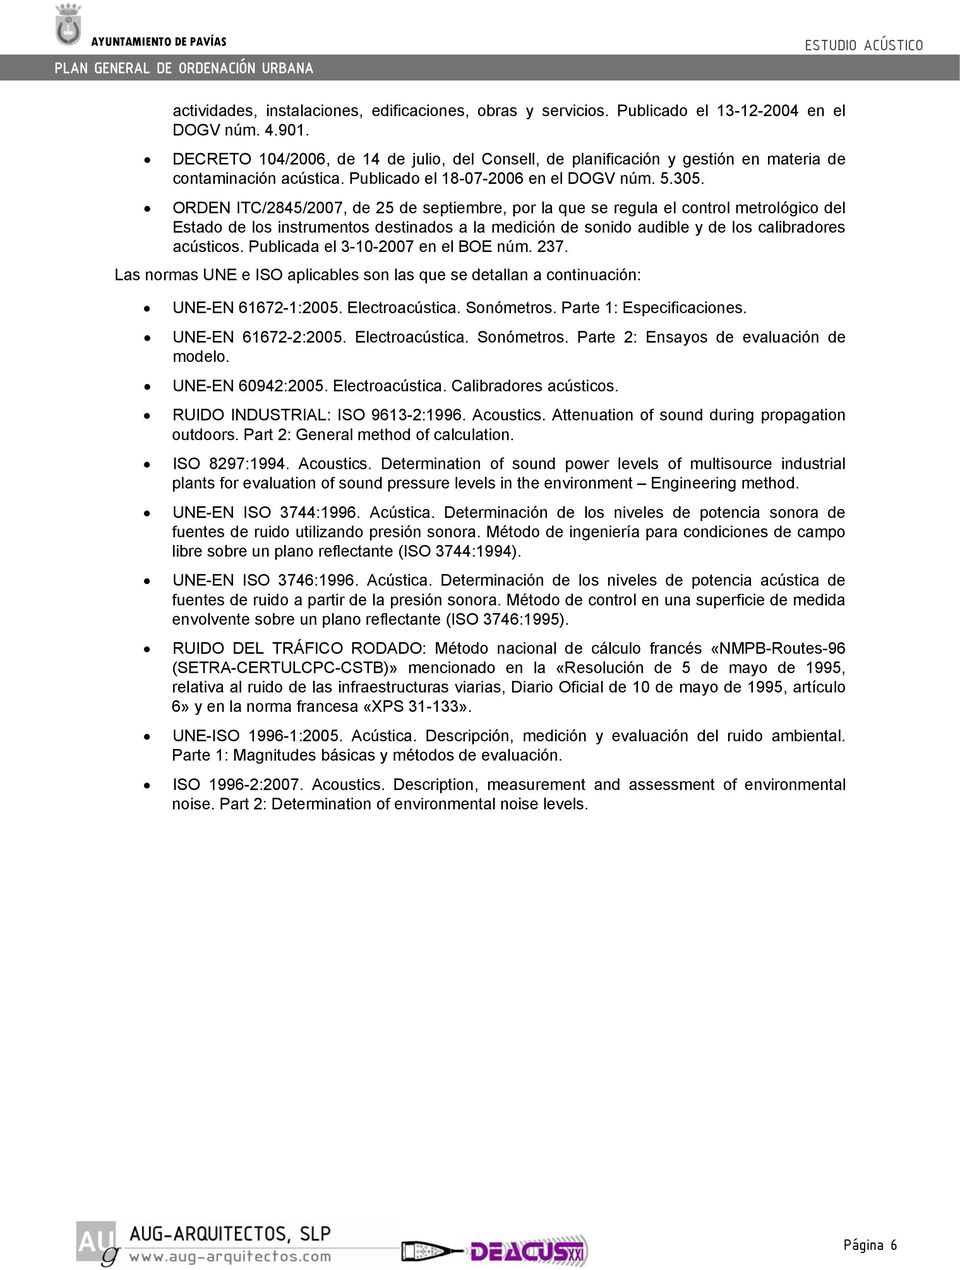 ORDEN ITC/2845/2007, de 25 de septiembre, por la que se regula el control metrológico del Estado de los instrumentos destinados a la medición de sonido audible y de los calibradores acústicos.